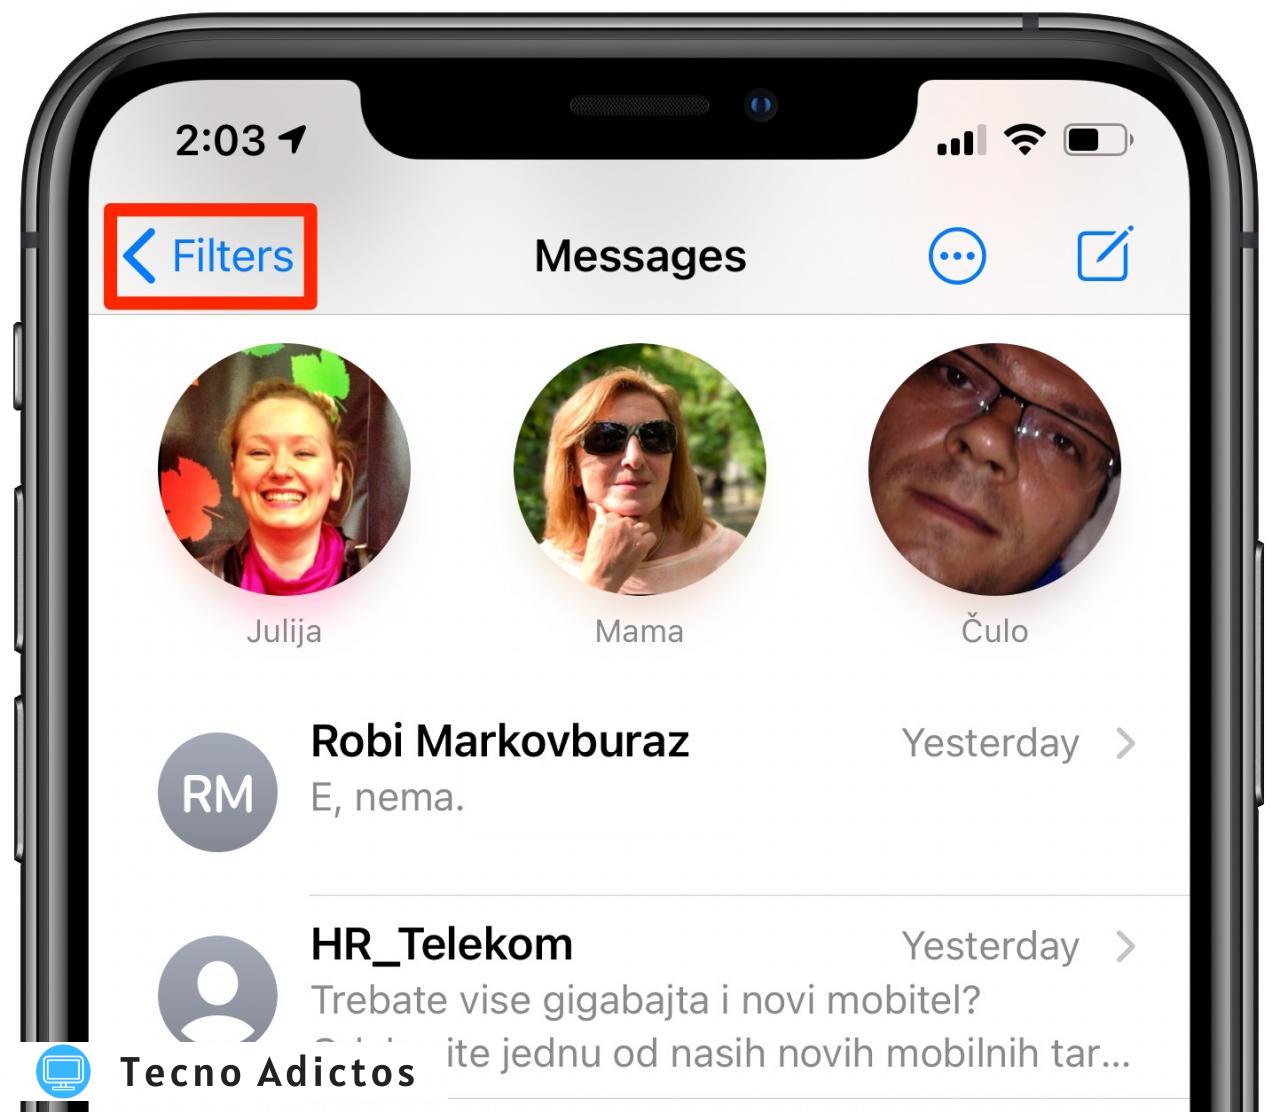 Filtrado de mensajes de iOS 14: el botón Filtros